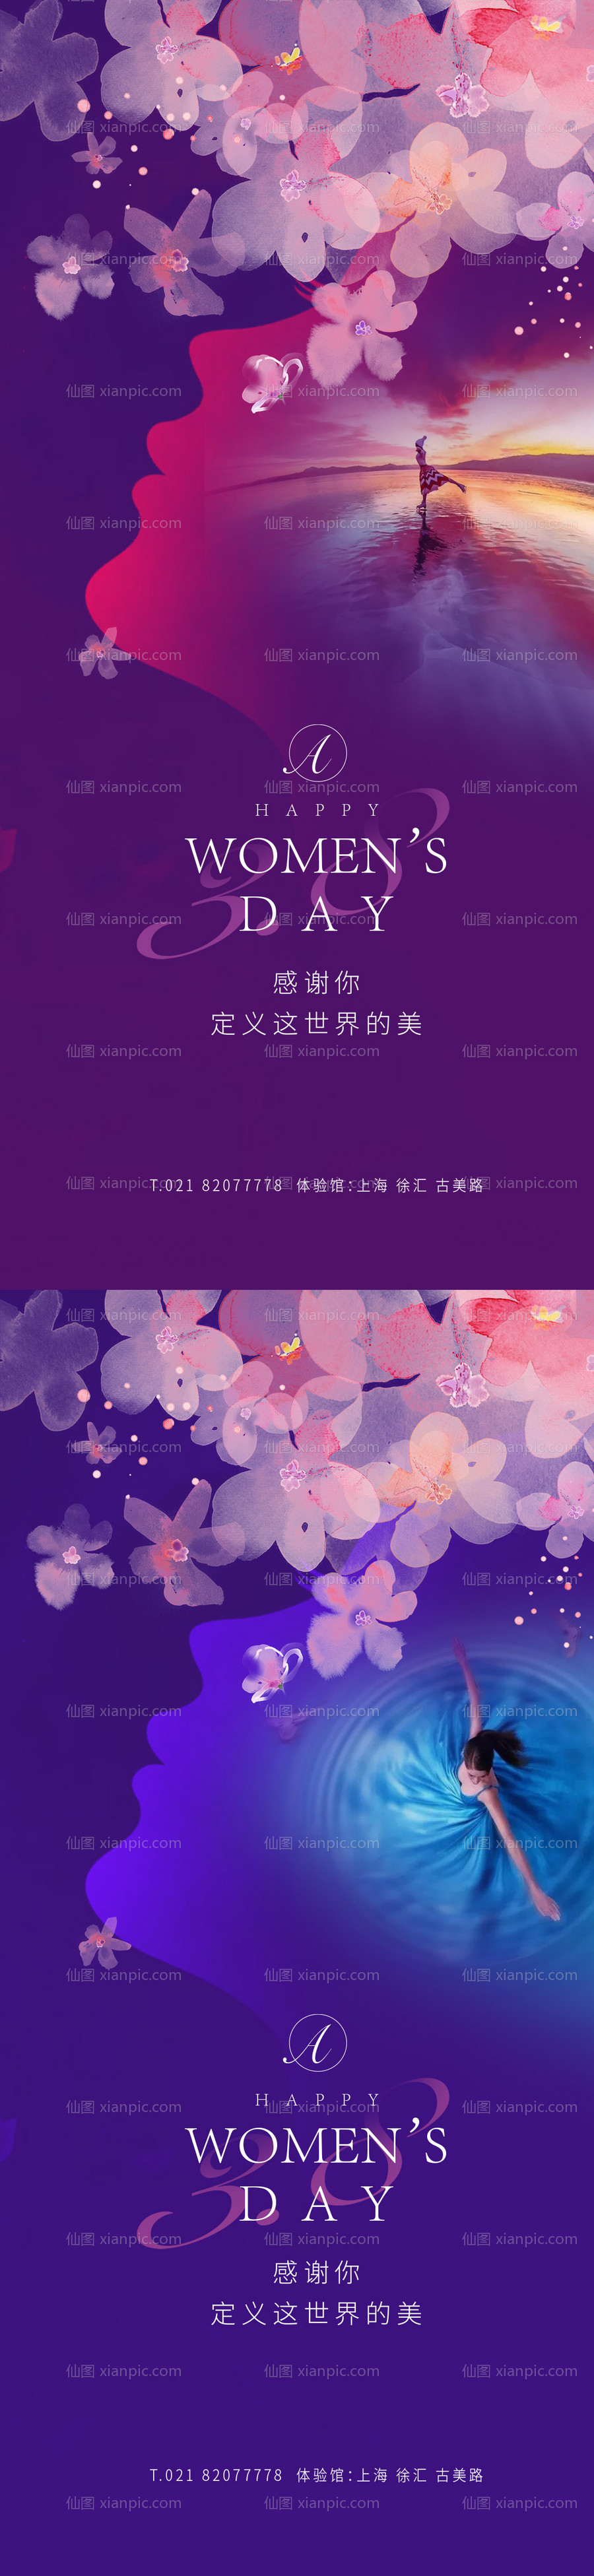 素材乐-女神节樱花舞蹈海报